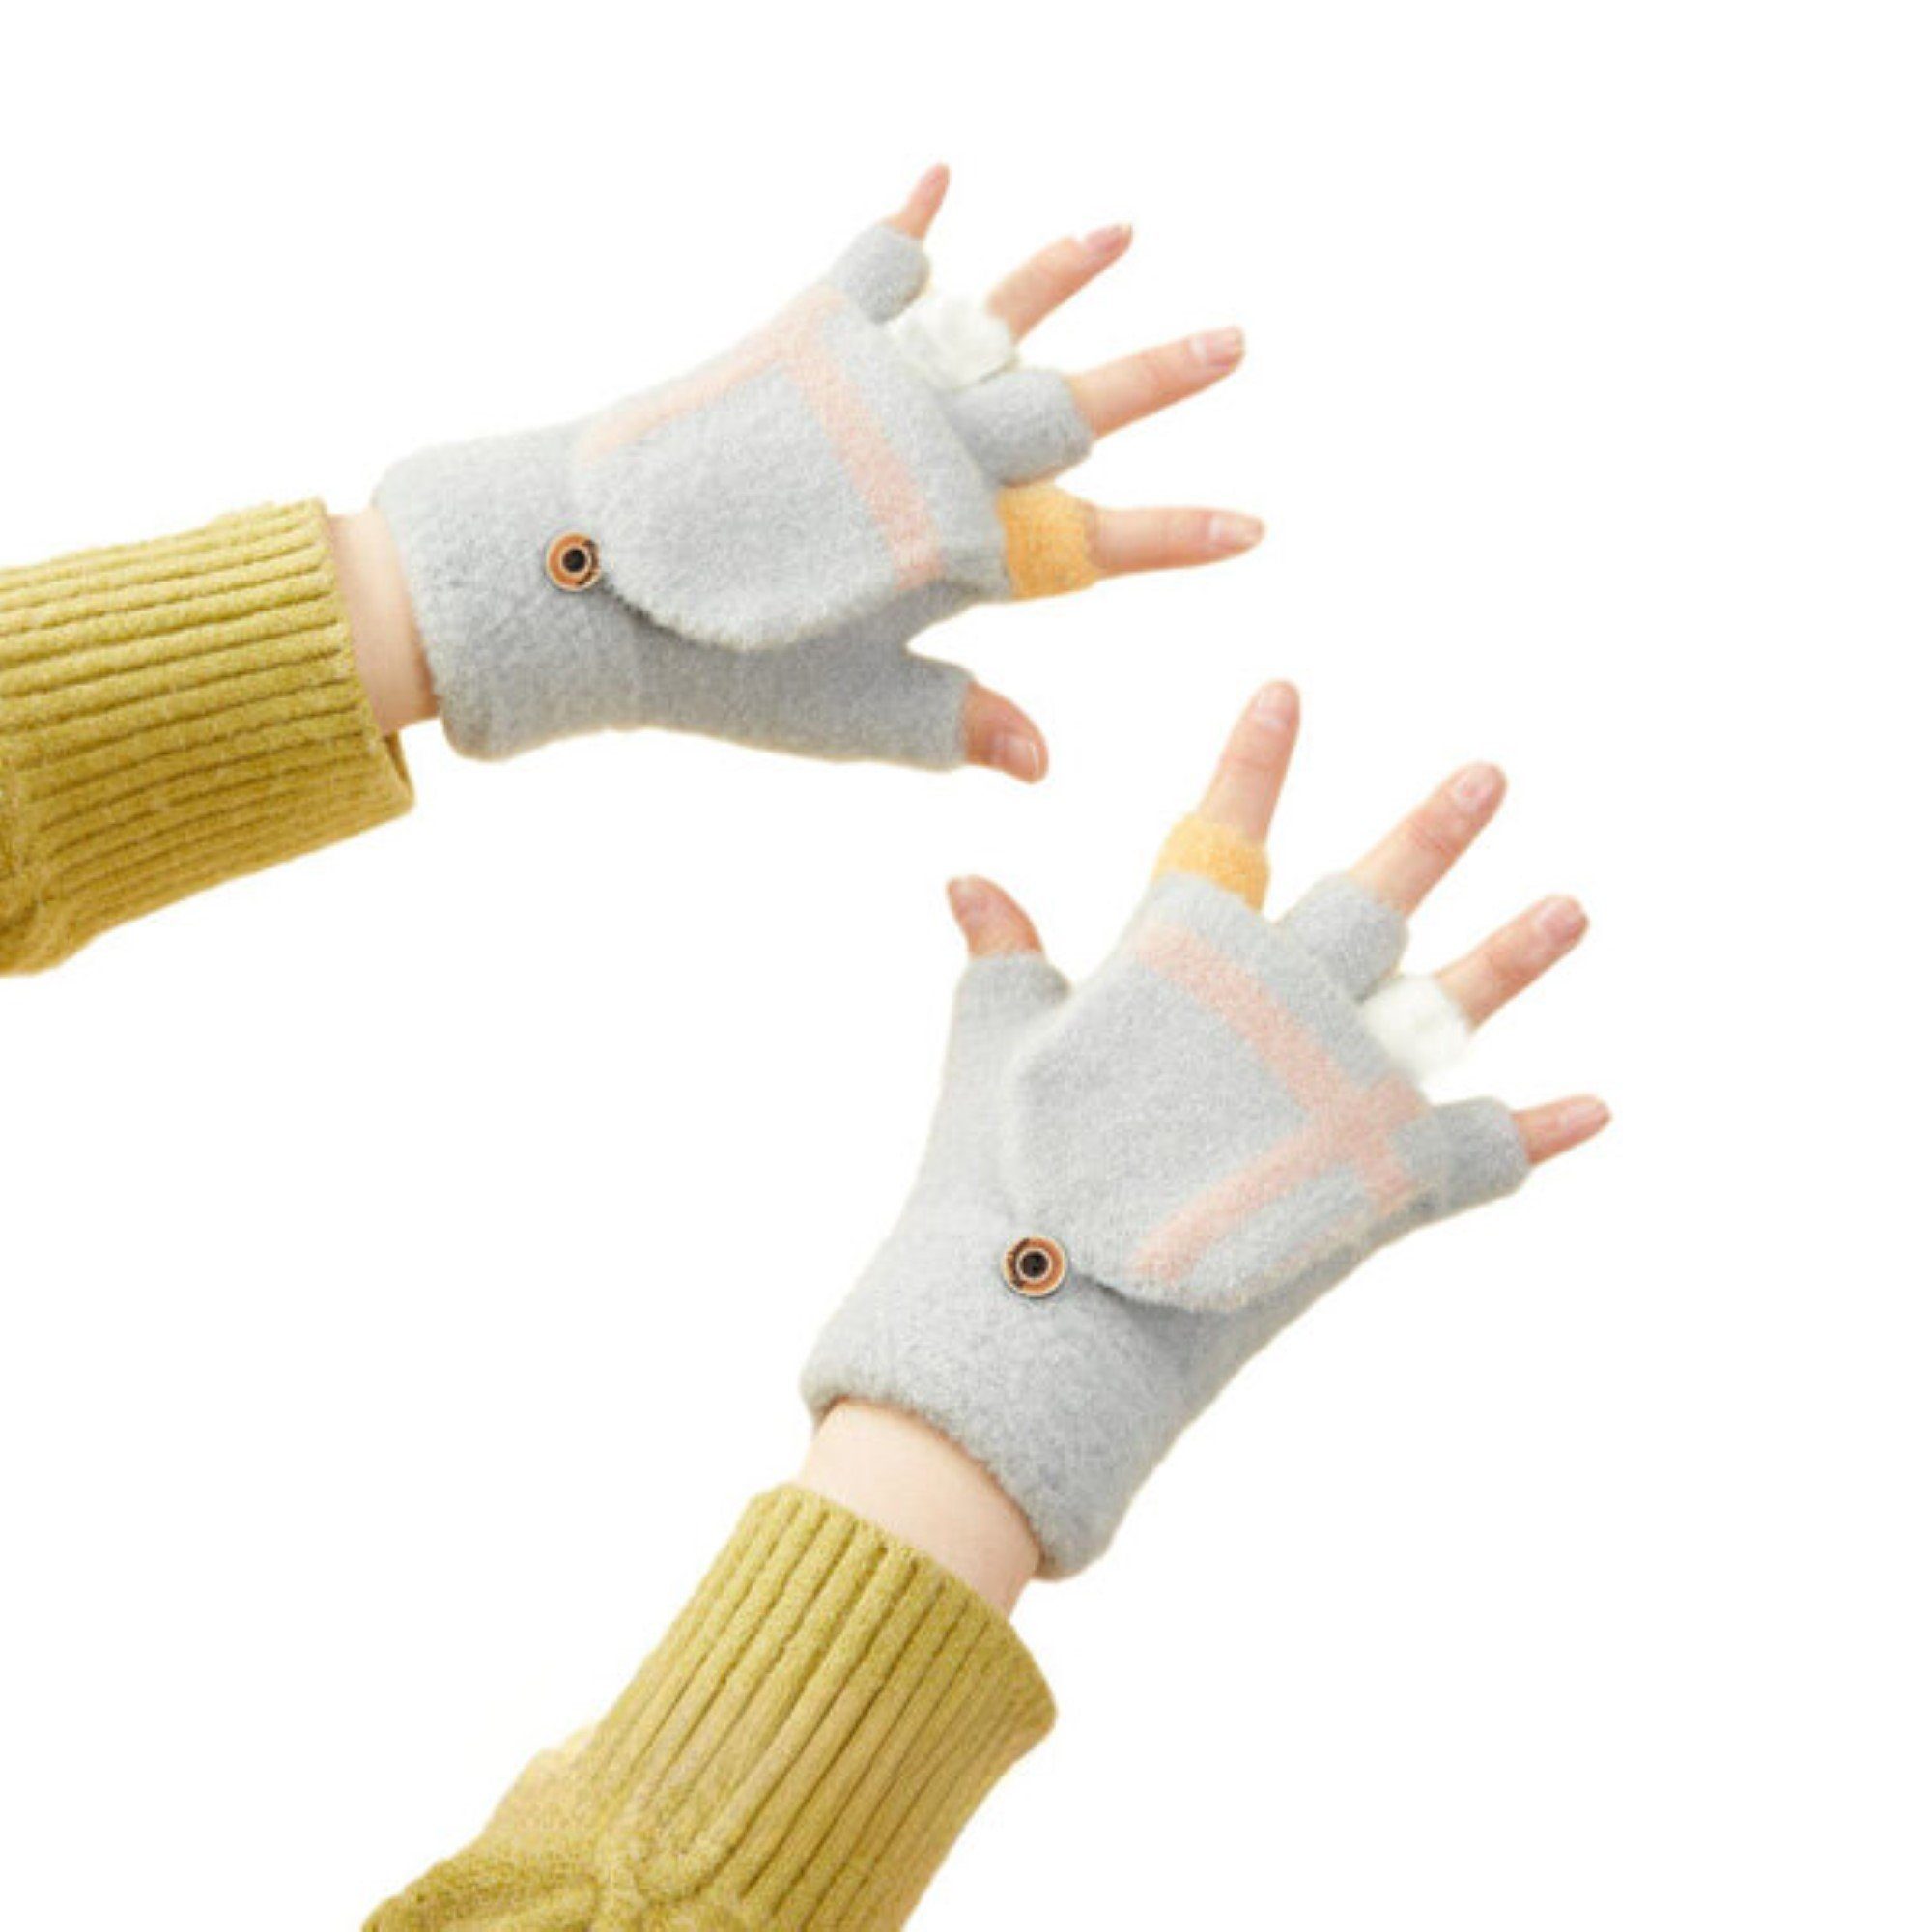 COFI 1453 Fäustlinge Winter-Telefonhandschuhe für Damen und Kinder mit Muster und Knöpfe Grau